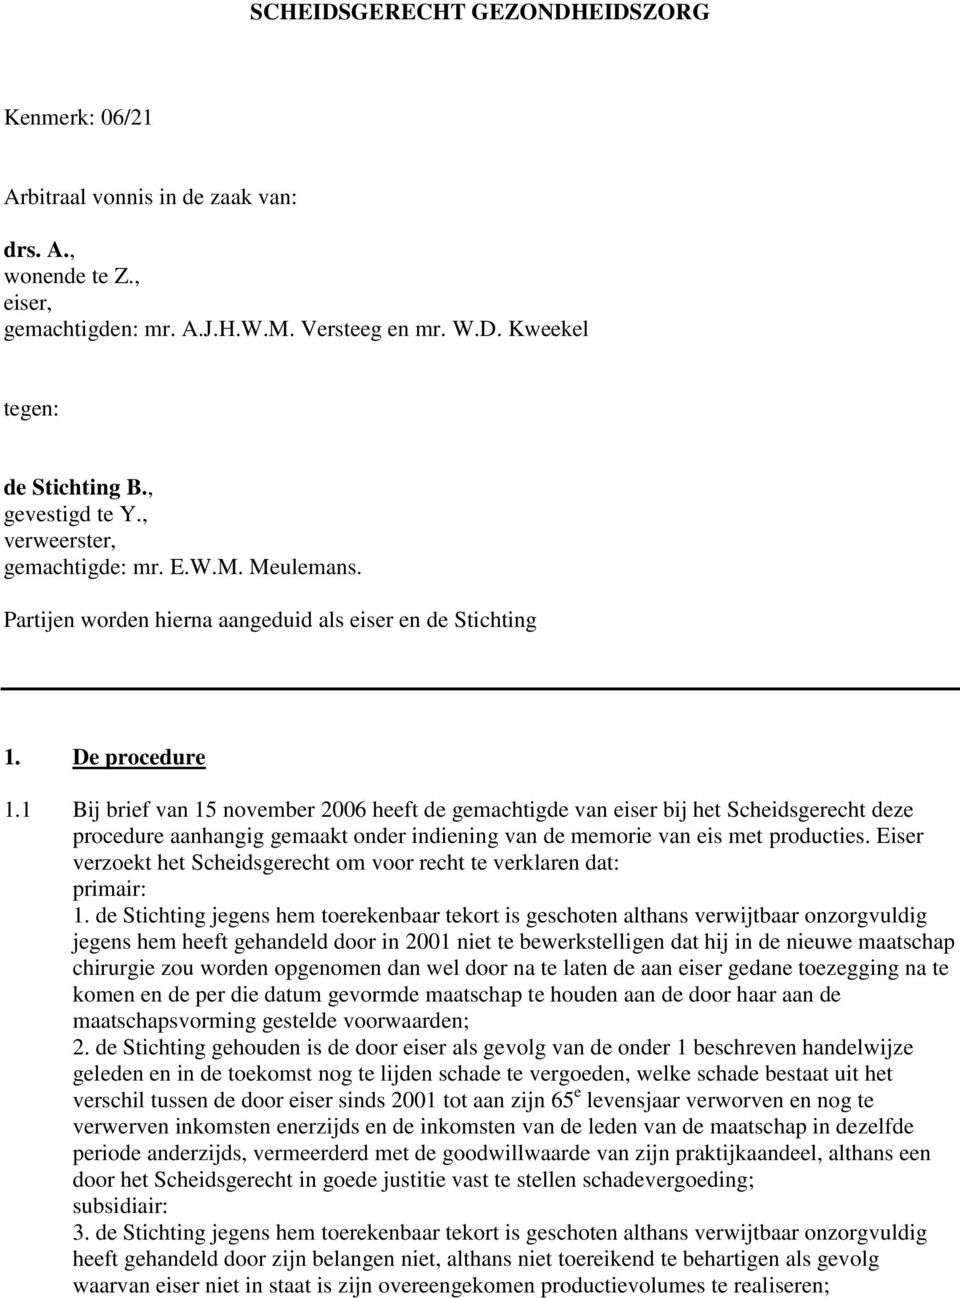 1 Bij brief van 15 november 2006 heeft de gemachtigde van eiser bij het Scheidsgerecht deze procedure aanhangig gemaakt onder indiening van de memorie van eis met producties.